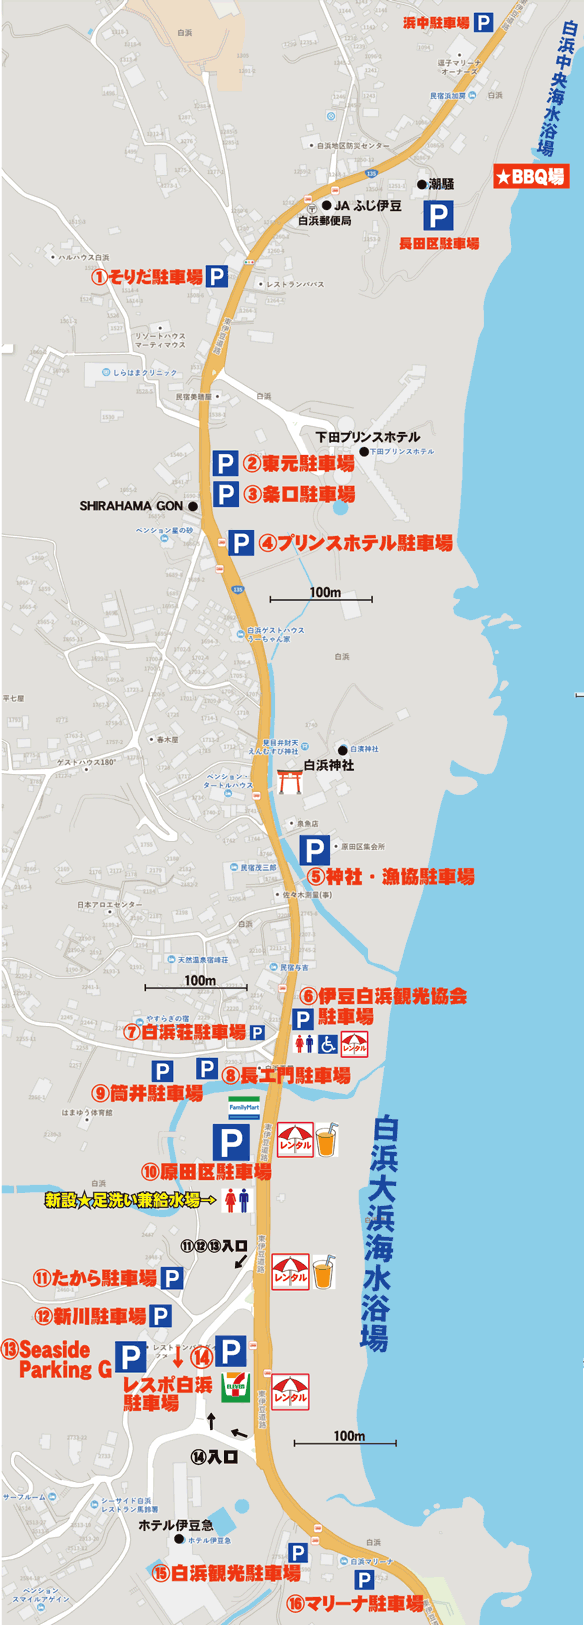 伊豆白浜海水浴場の駐車場地図案内